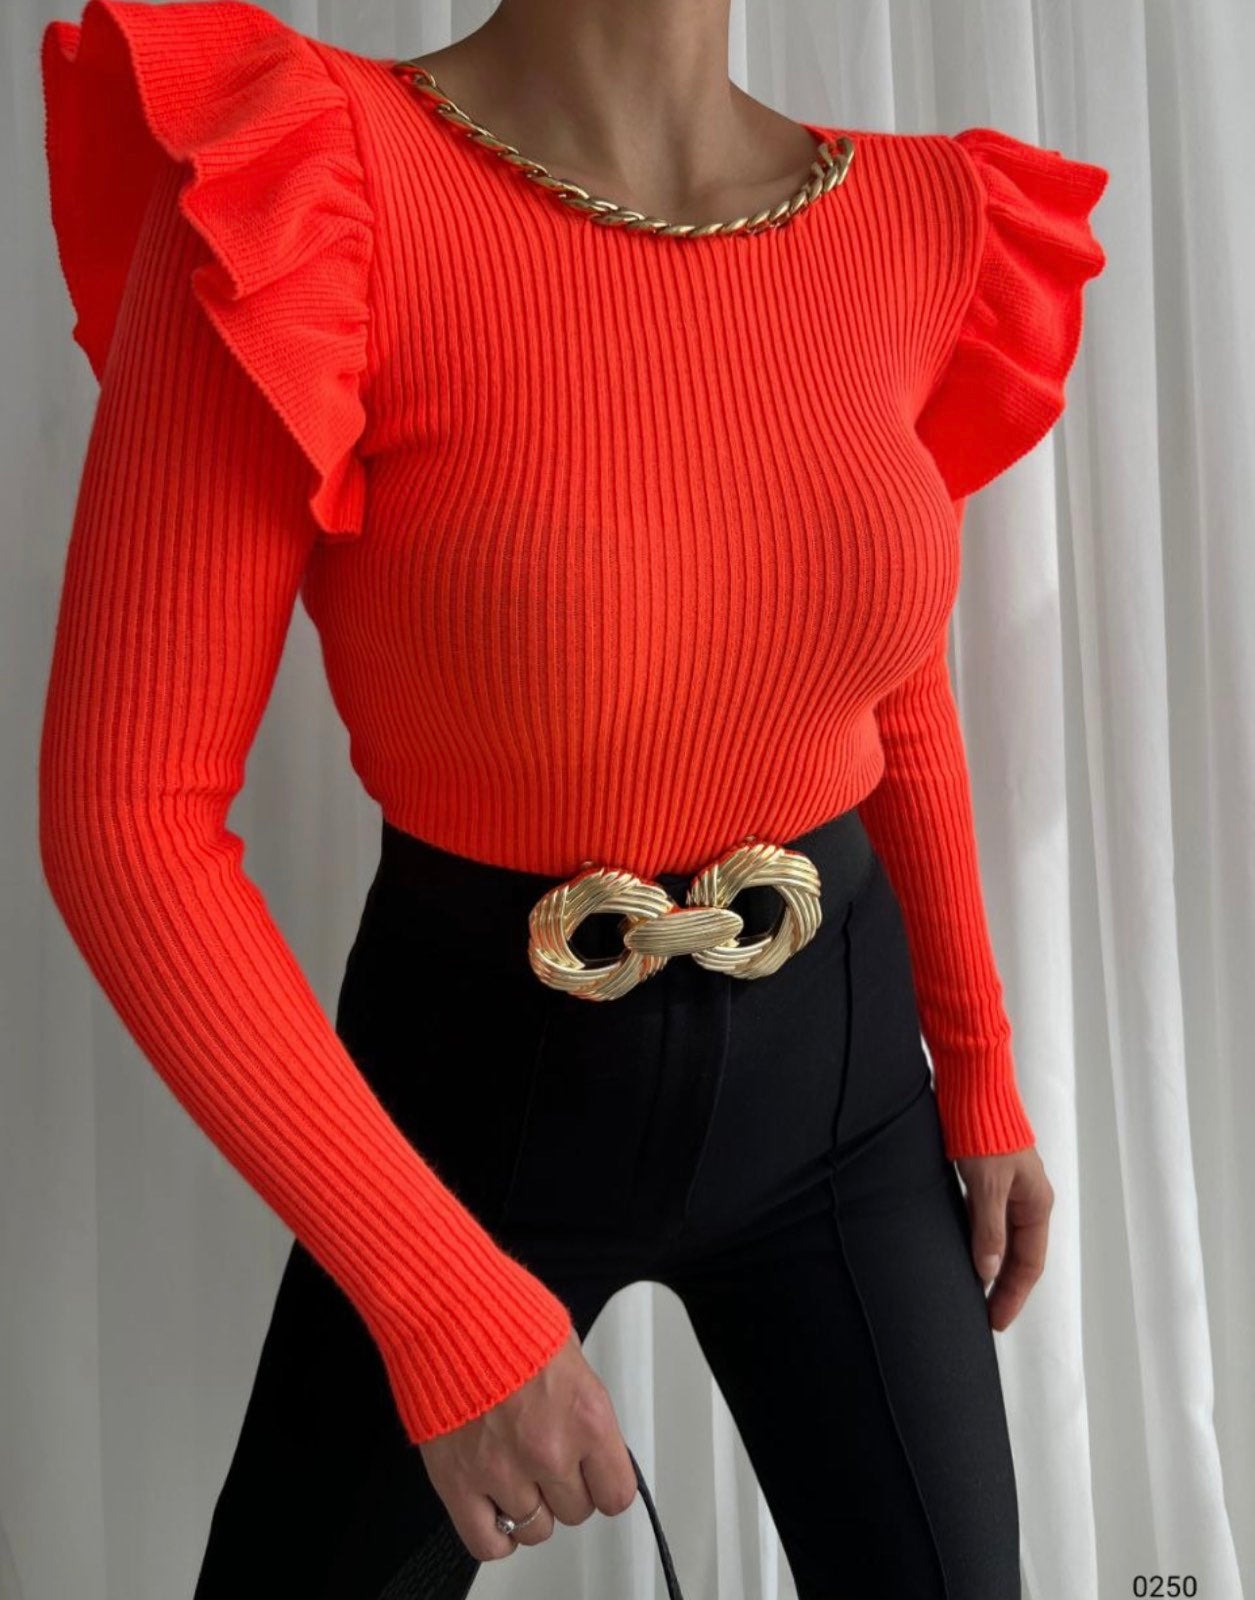 Дамска блуза EMMA  https://bvseductive.com/products/womans-s-shirts-tops-emma-1  ежедневна дамска блуза в оранжев цвят съставена от мека и приятна материя модел с обло деколте и дълги ръкави с кокетни воланчета около раменете топ избор за Вашата актуална визия подходяща за S/M